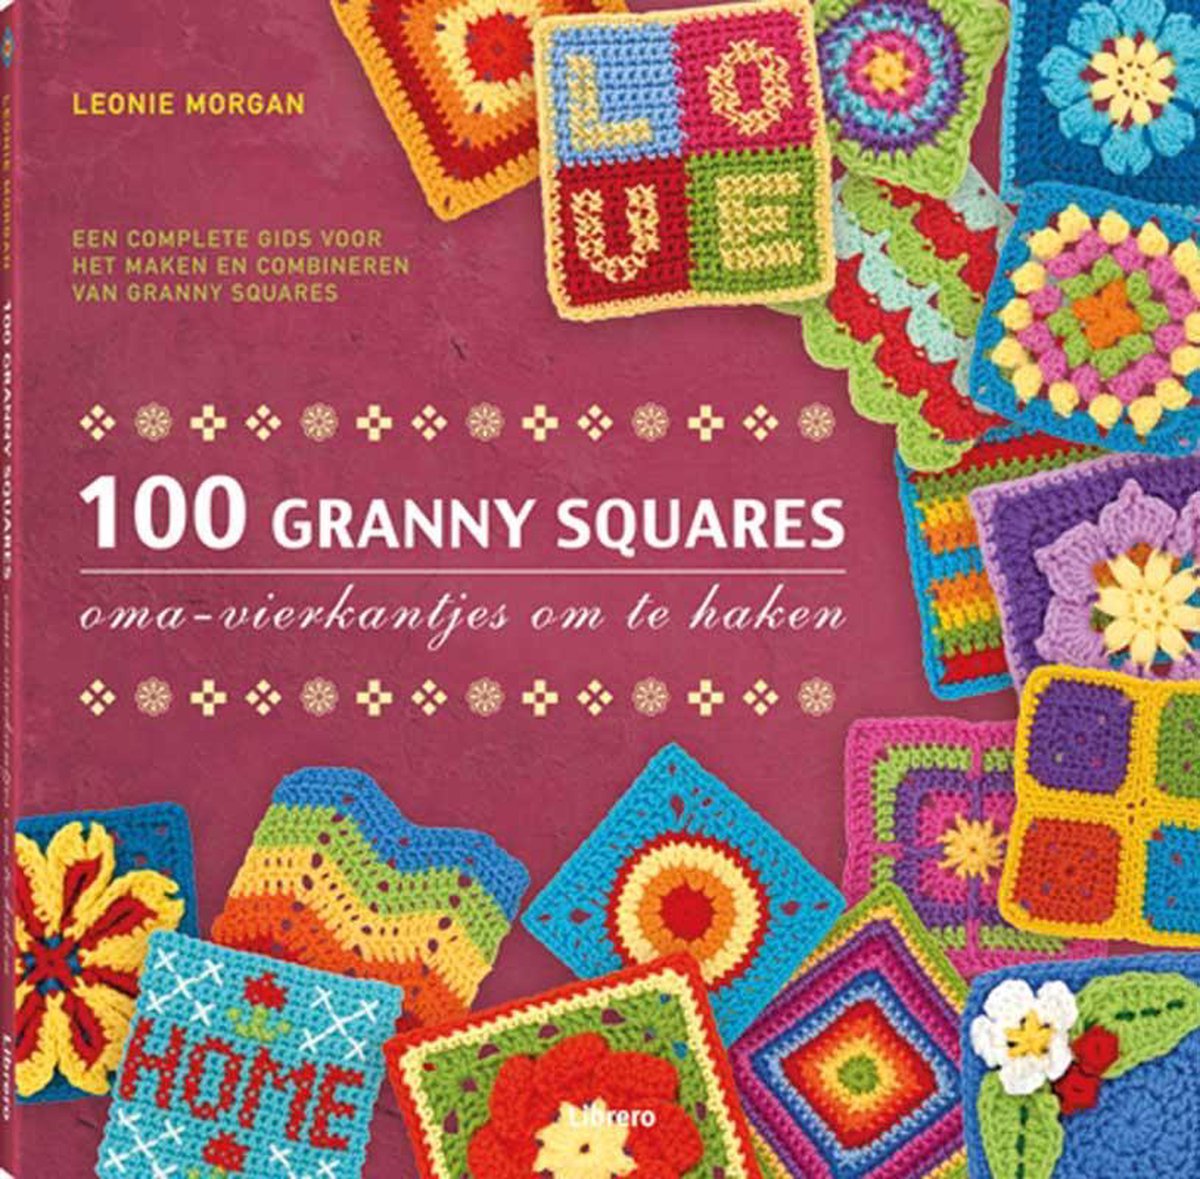 100 granny squares - Oma s vierkantjes om te haken - Leonie Morgan